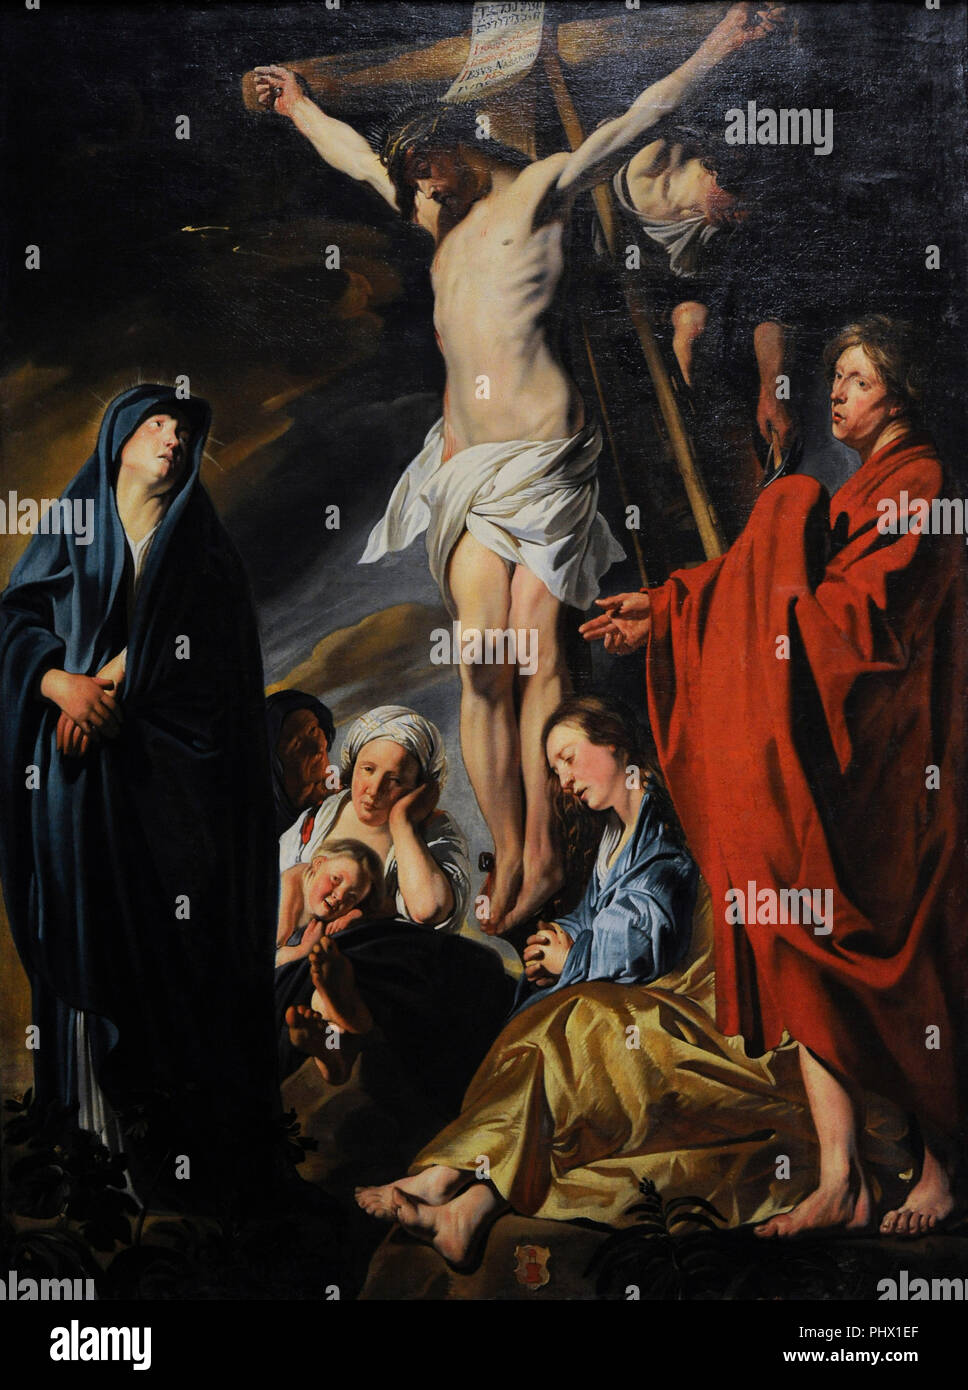 Jacob Jordaens (1593-1678). Peintre flamand. Crucifixion, ca.1617-1620. Musée Wallraf-Richartz. Cologne. L'Allemagne. Banque D'Images